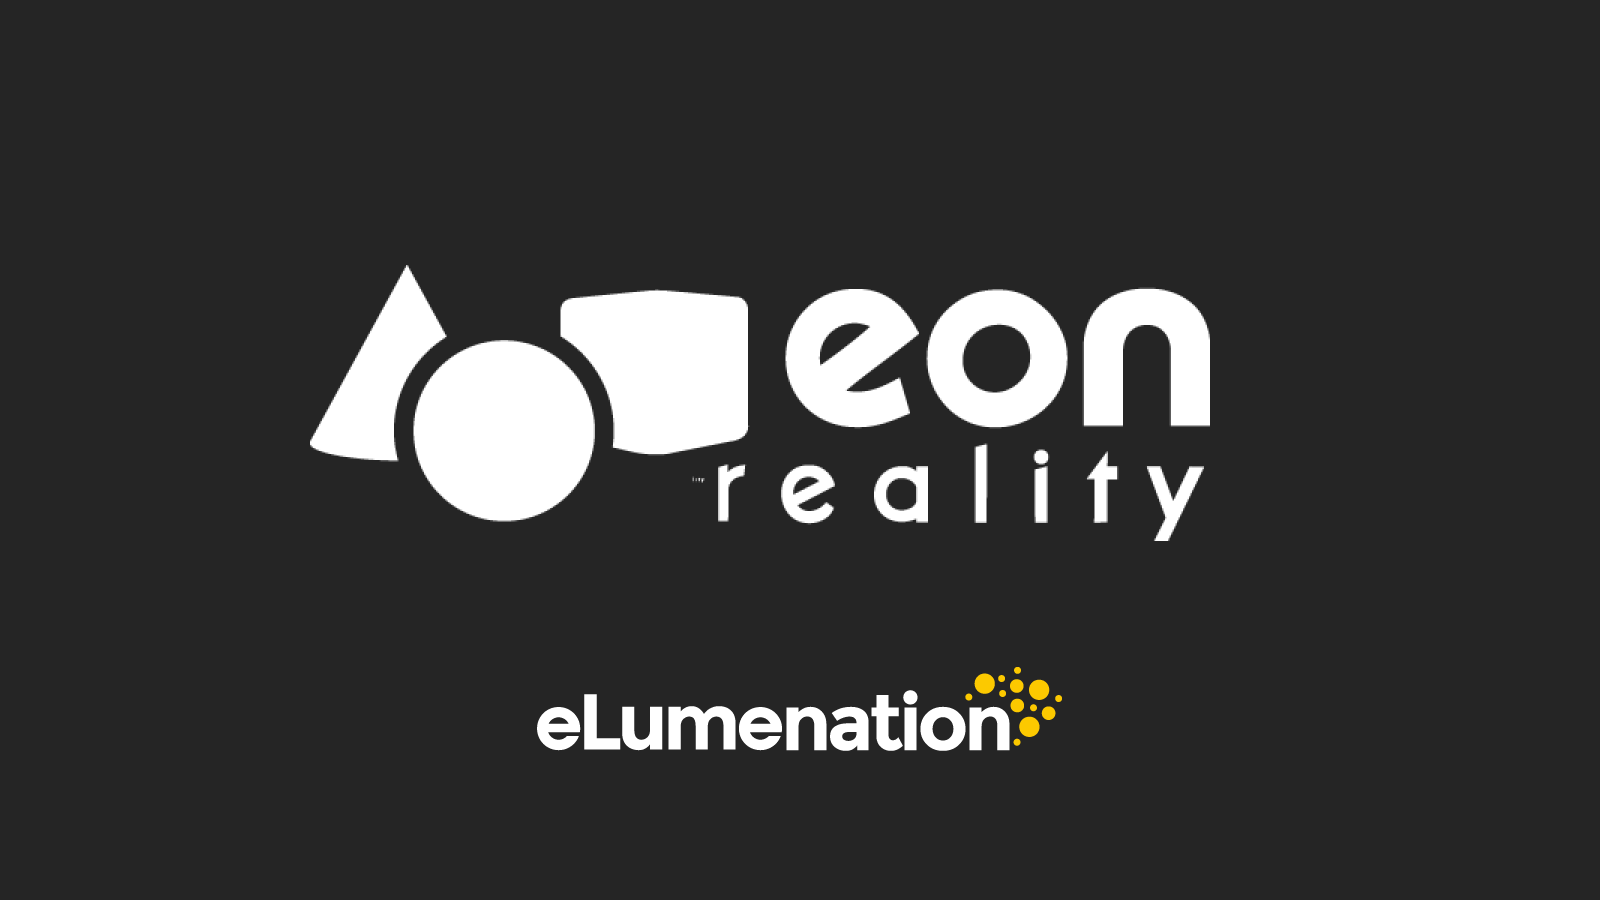 EON Reality at eLumenation